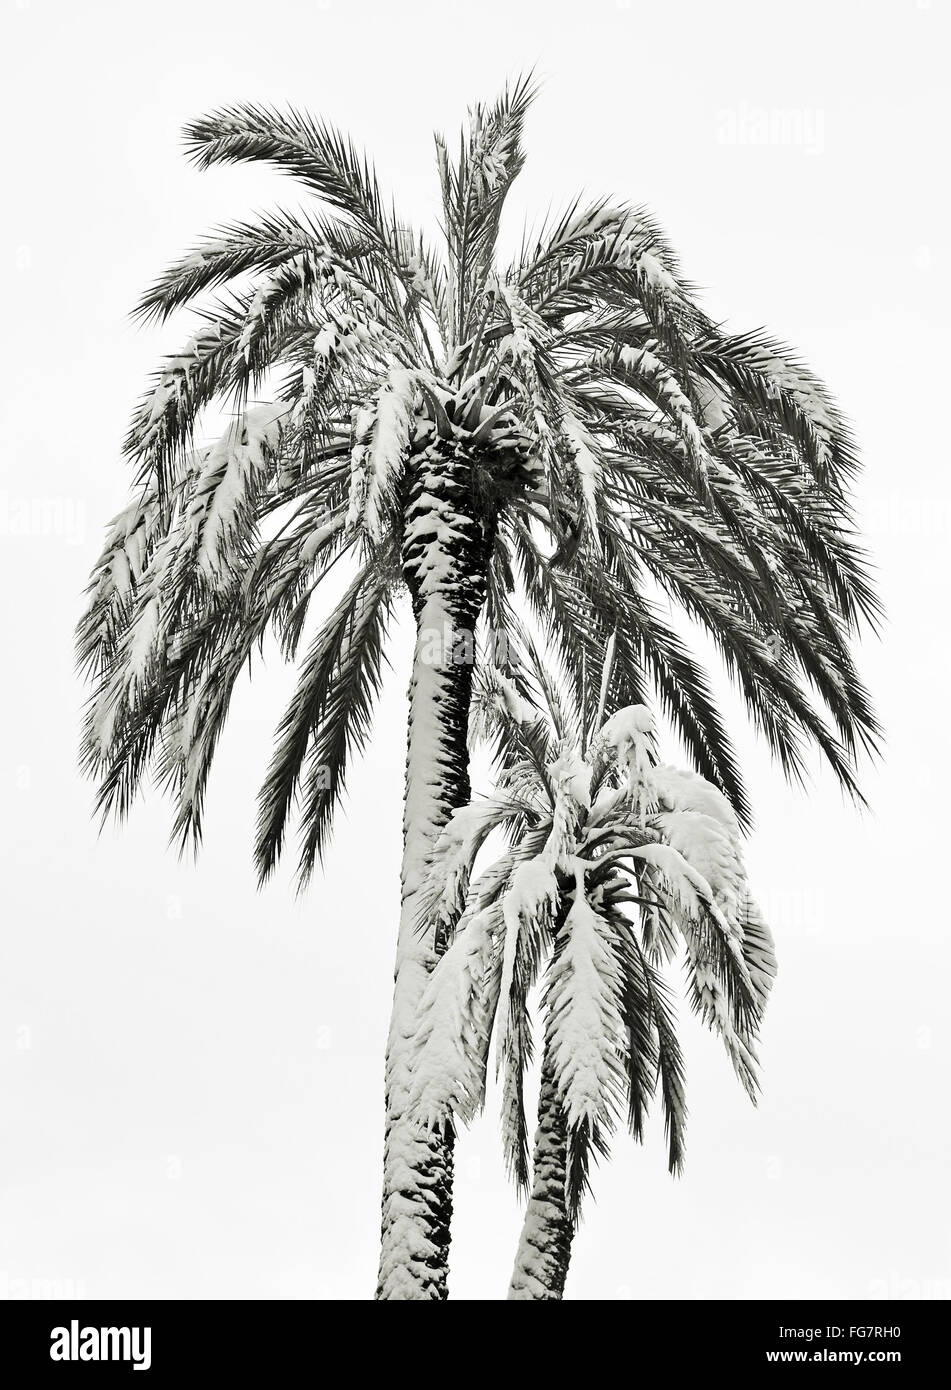 zwei Palmen unter Schnee auf weißem Hintergrund Stockfoto